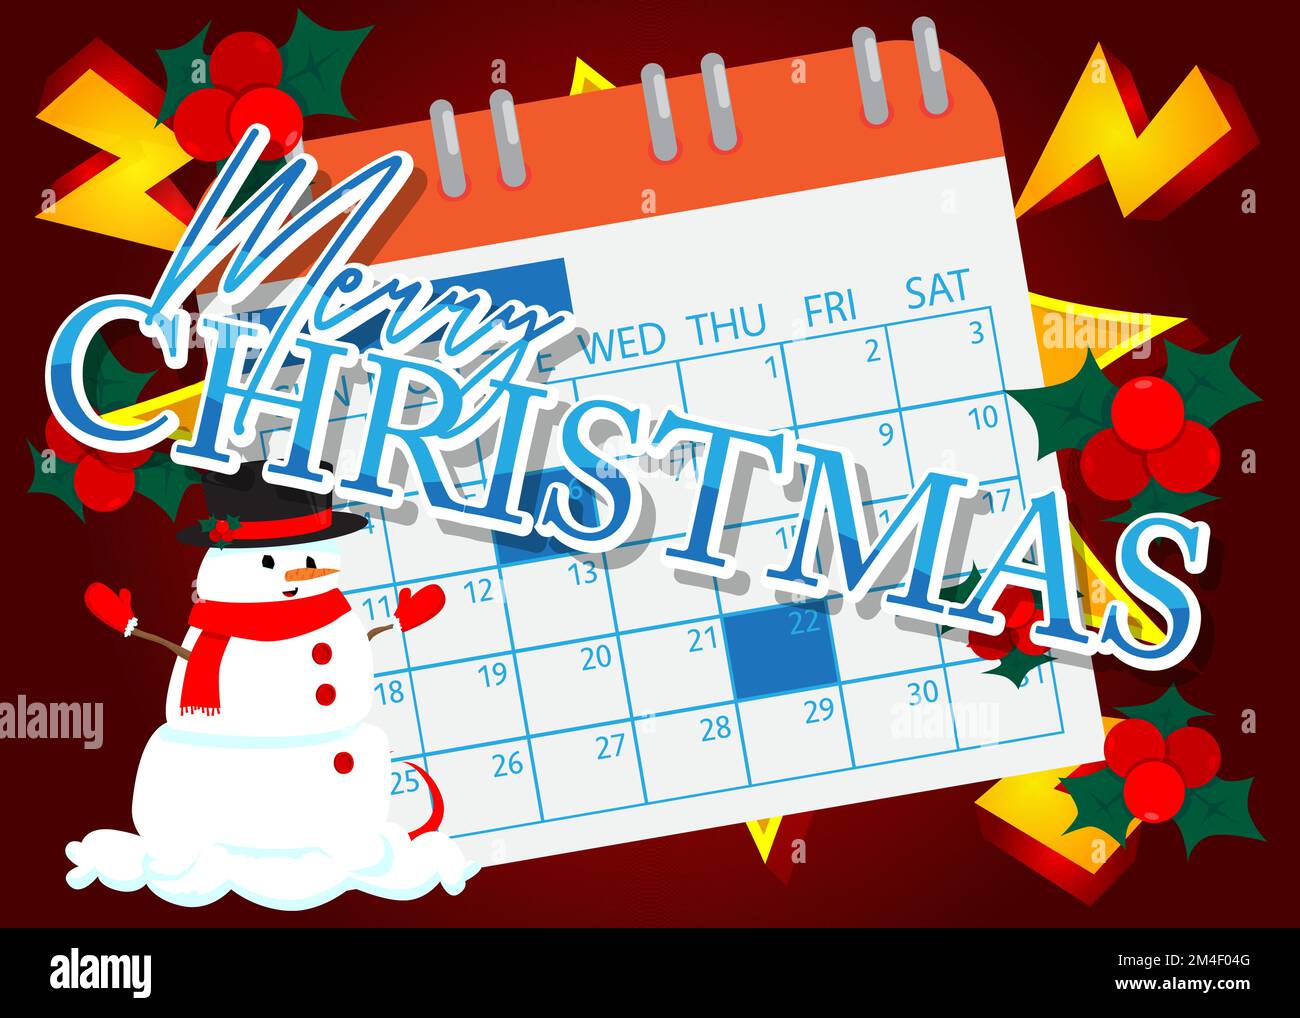 Merry Christmas text with Calendar. Cartoon vector illustration. Stock Vector